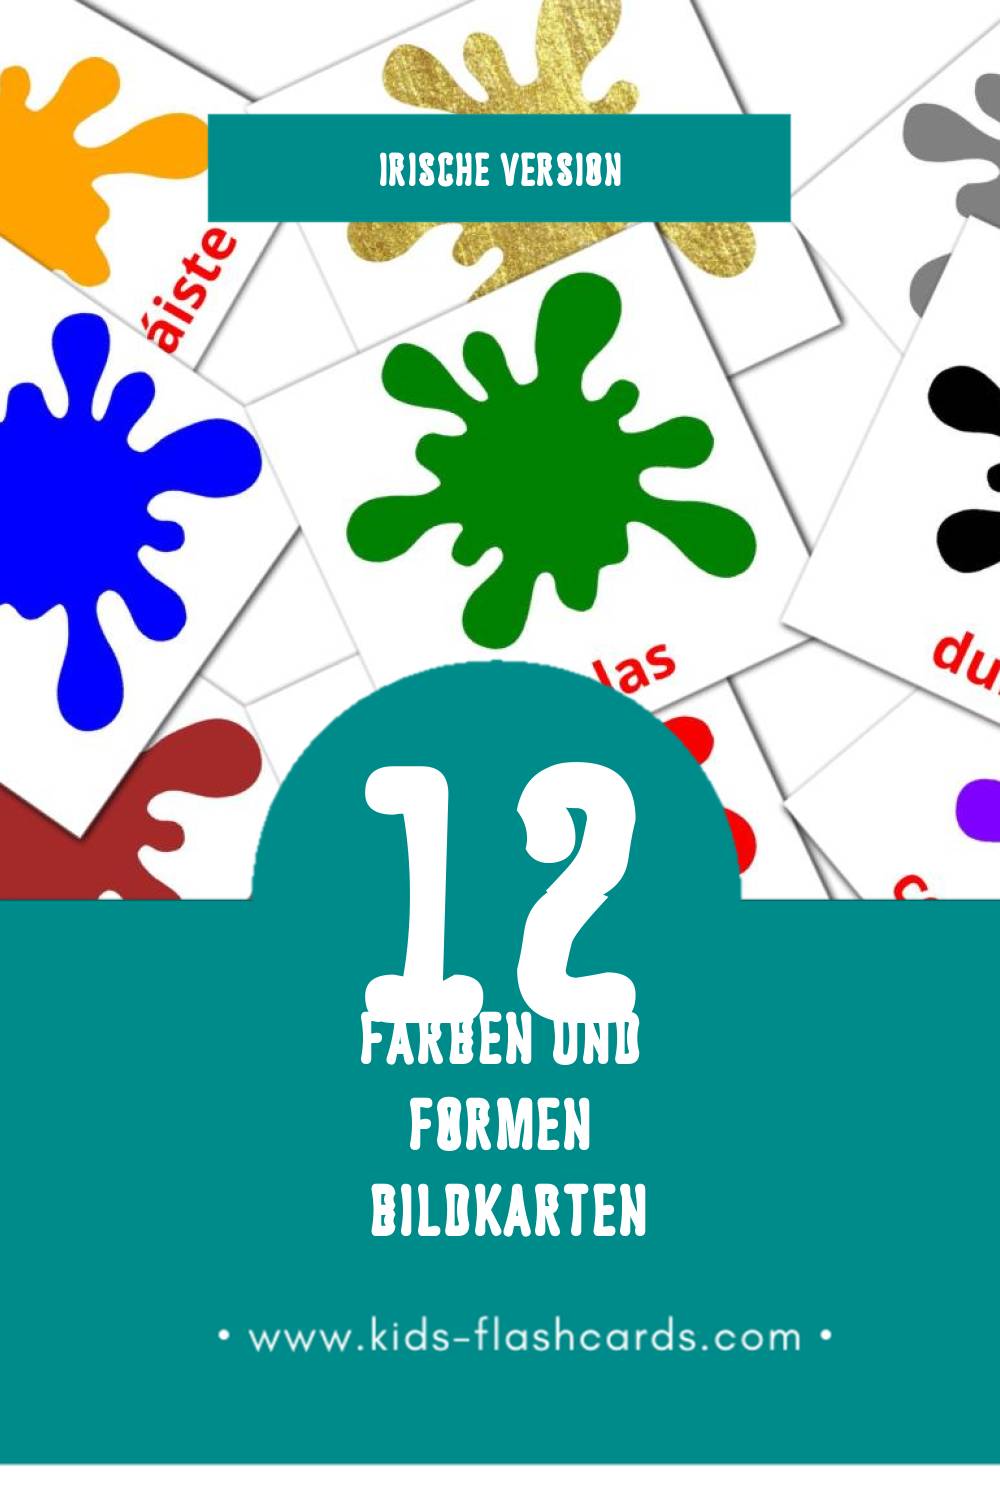 Visual dathanna agus cruthanna Flashcards für Kleinkinder (12 Karten in Irisch)